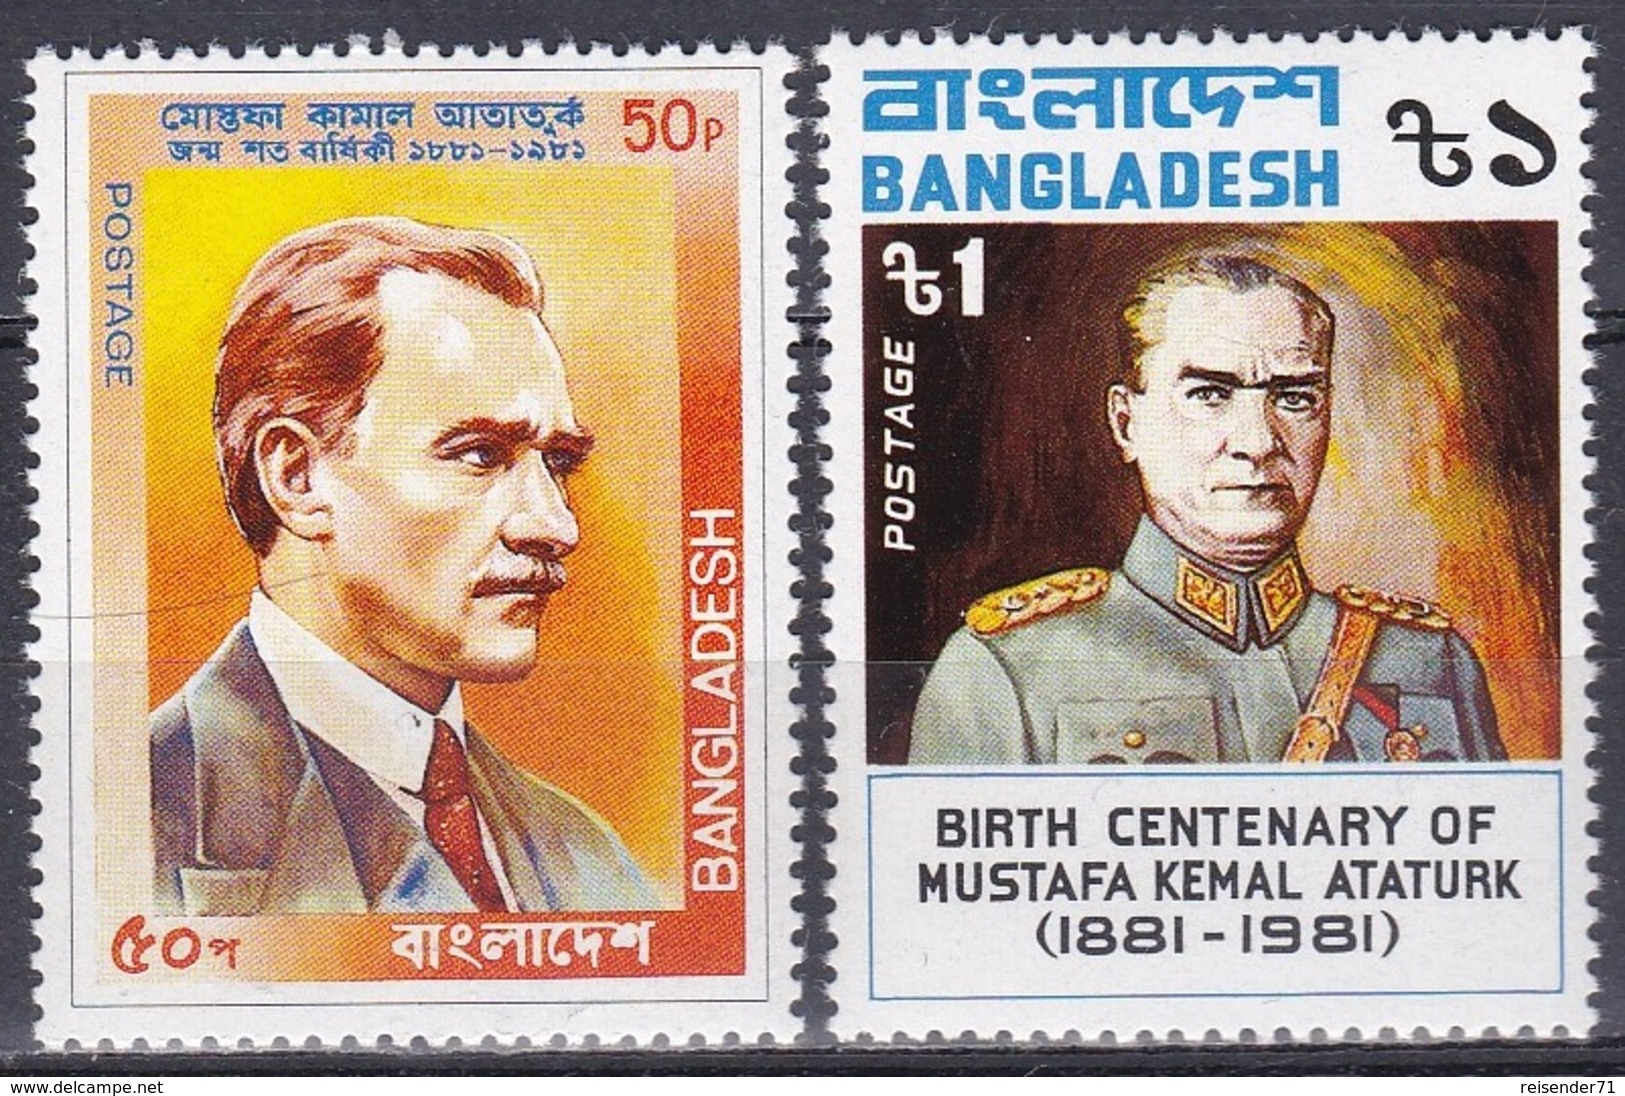 Bangladesch Bangladesh 1981 Geschichte History Politiker Politicans Persönlichkeiten Mustafa Kemal Atatürk, Mi. 159-0 ** - Bangladesch